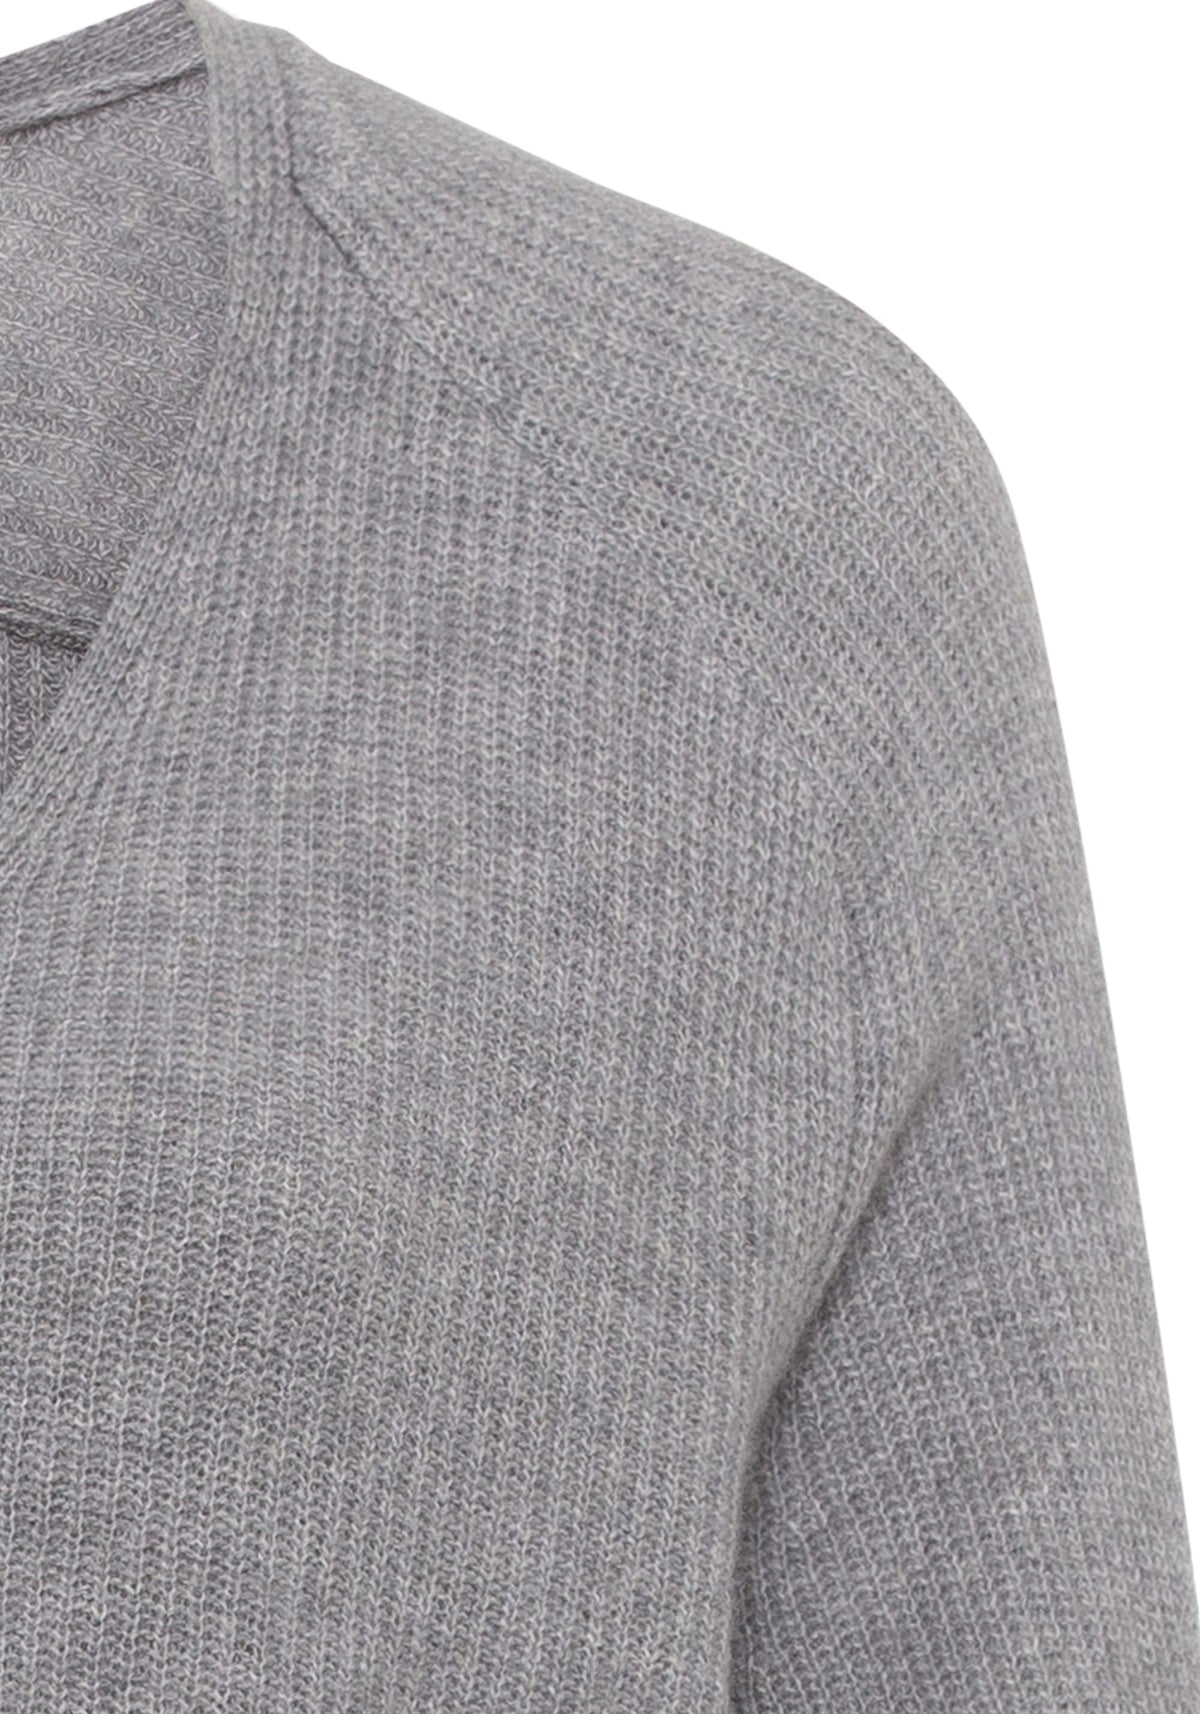 Cashmere Merino Blend Long Sleeve V-Neck Sweater